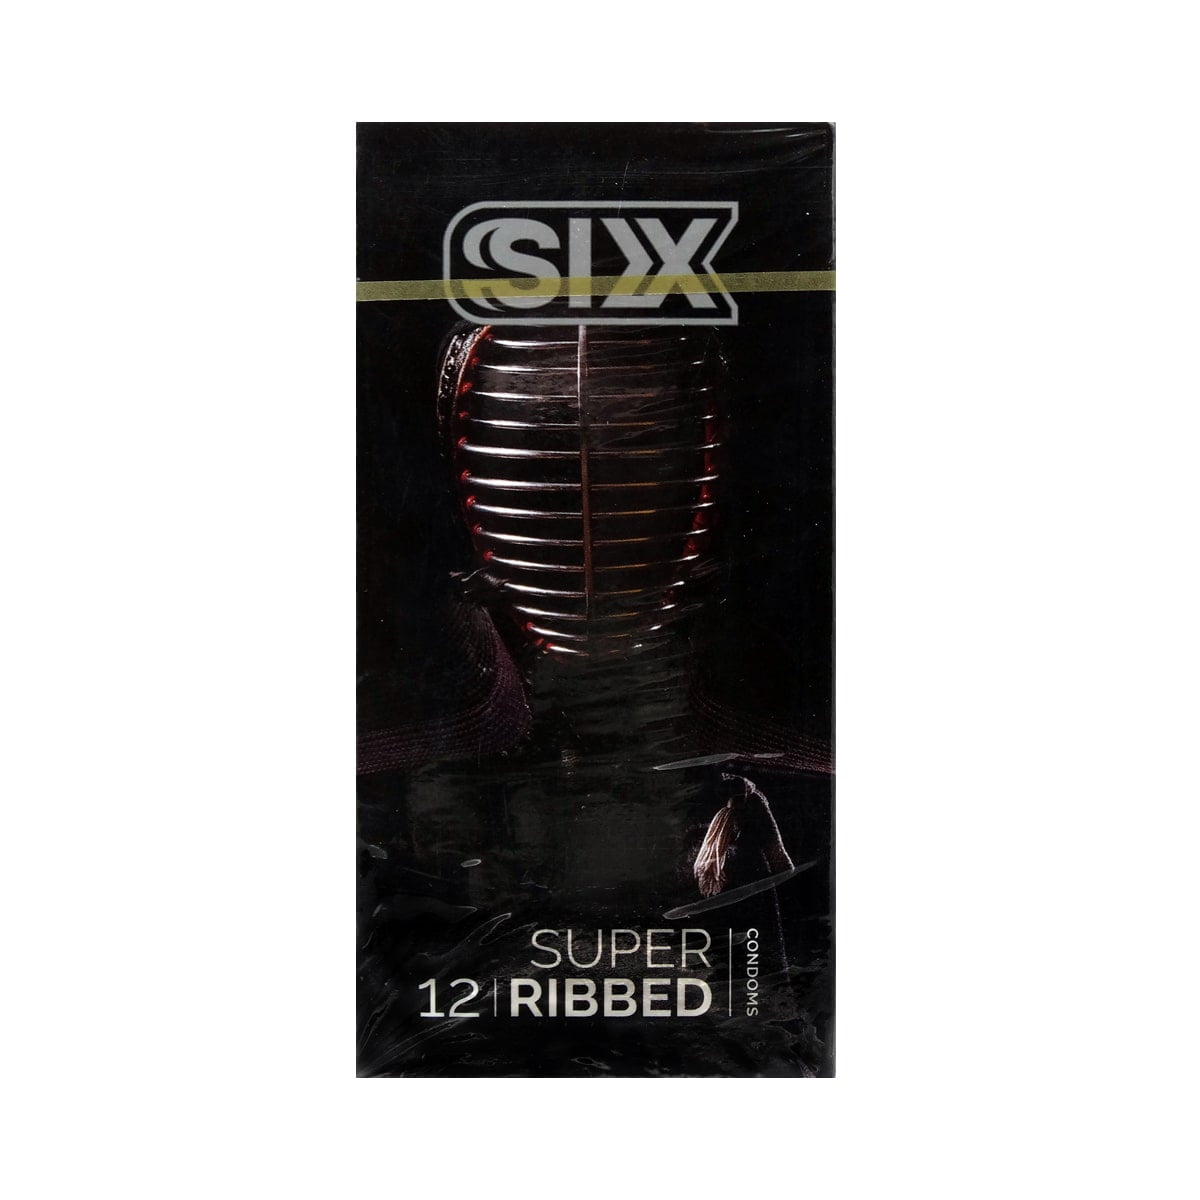 کاندوم سیکس مدل شیاردار بسته ۱۲ عددی Condom Six Super Ribbed - 12PCS